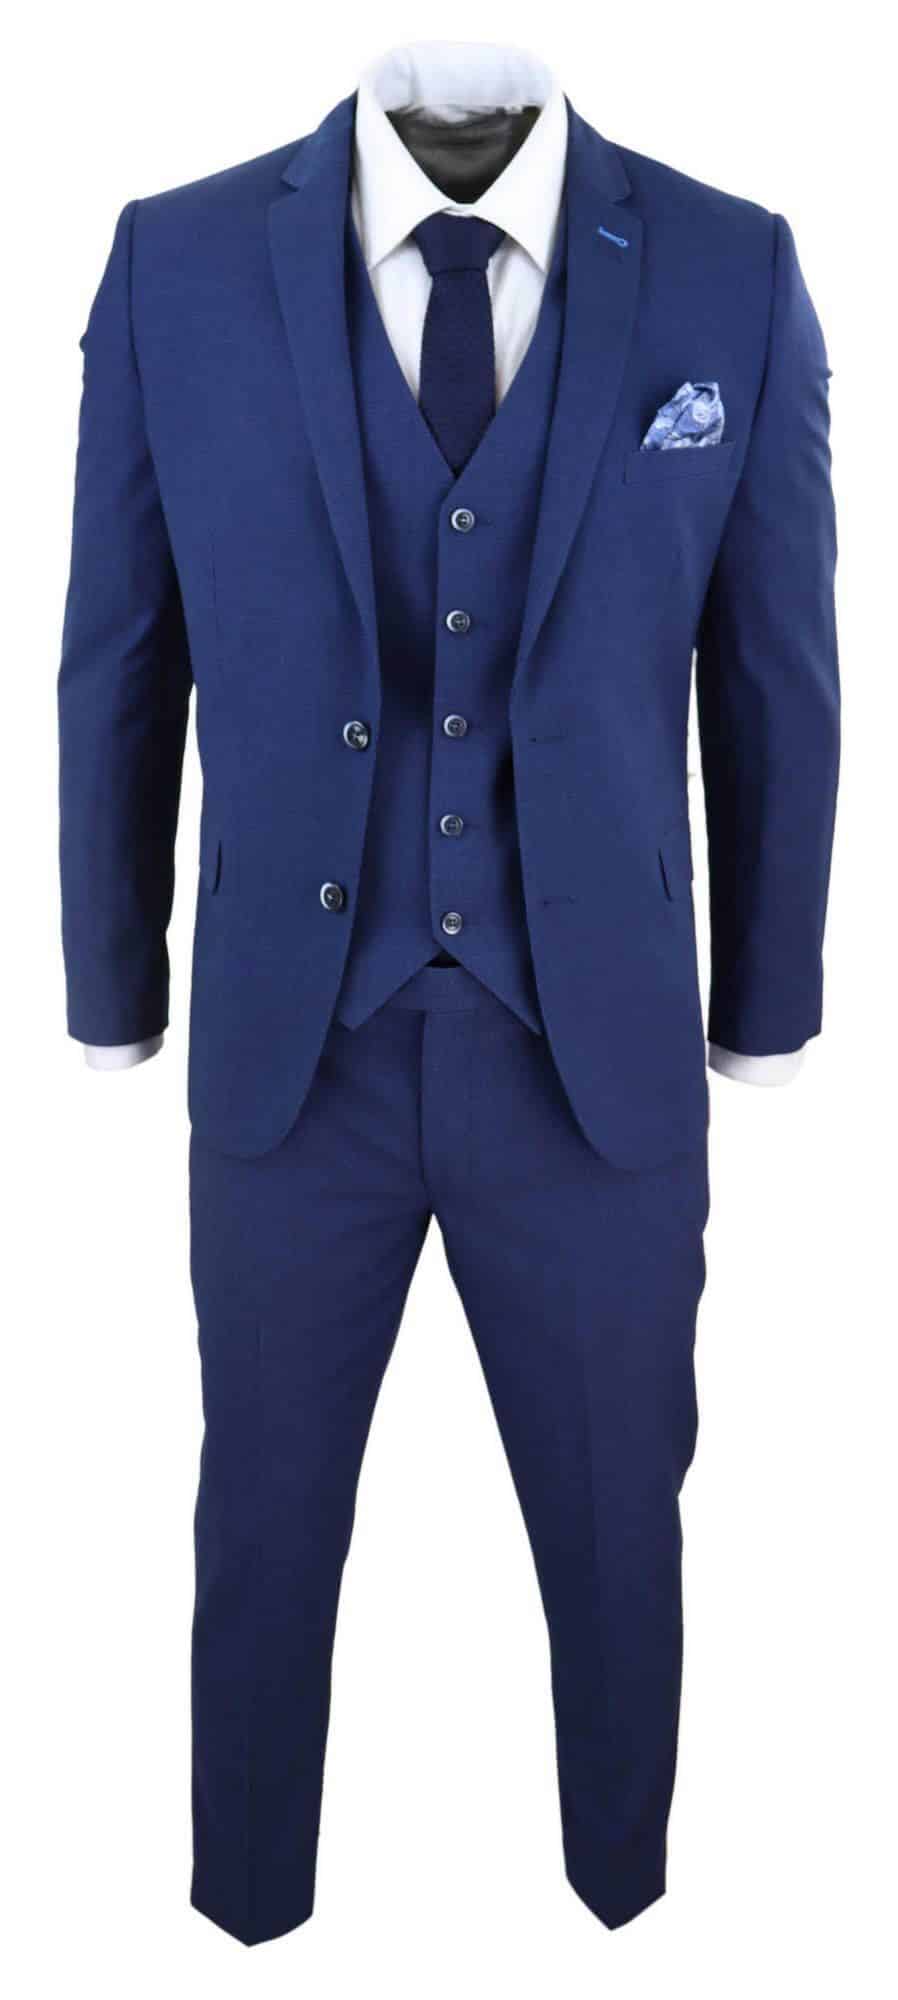 Mens Navy Blue 3 Piece Wedding Suit Buy Online Happy Gentleman